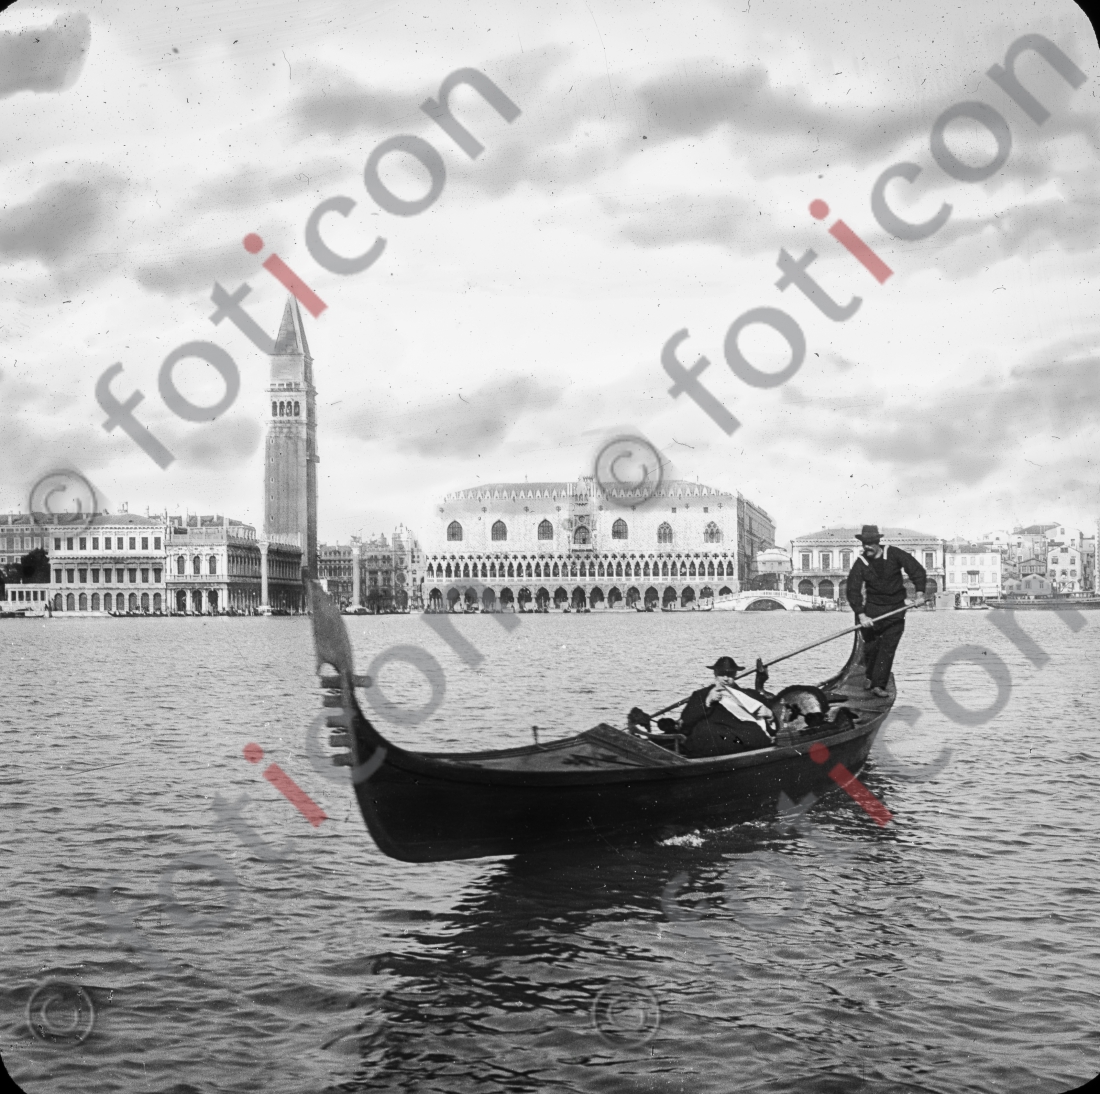 Gondel | Gondola - Foto foticon-simon-147-058-sw.jpg | foticon.de - Bilddatenbank für Motive aus Geschichte und Kultur